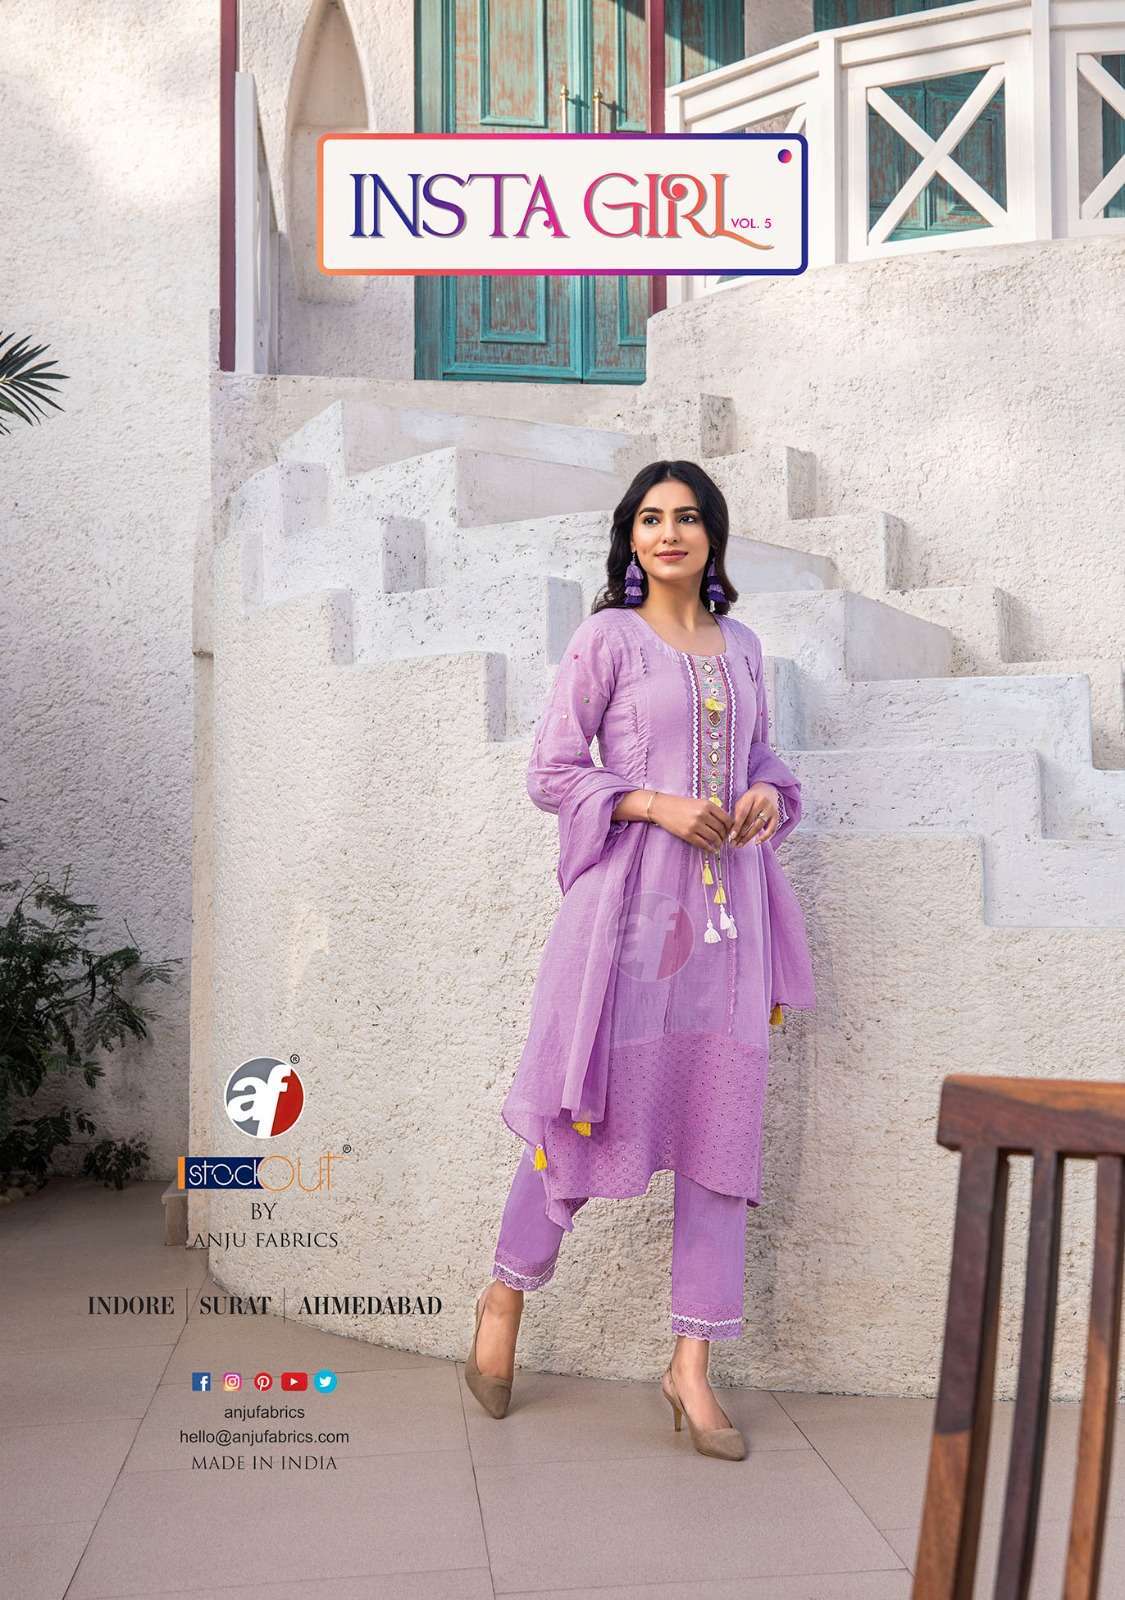 Anju Fabrics Insta Girl Vol -5 Surat Kurti manufacturers